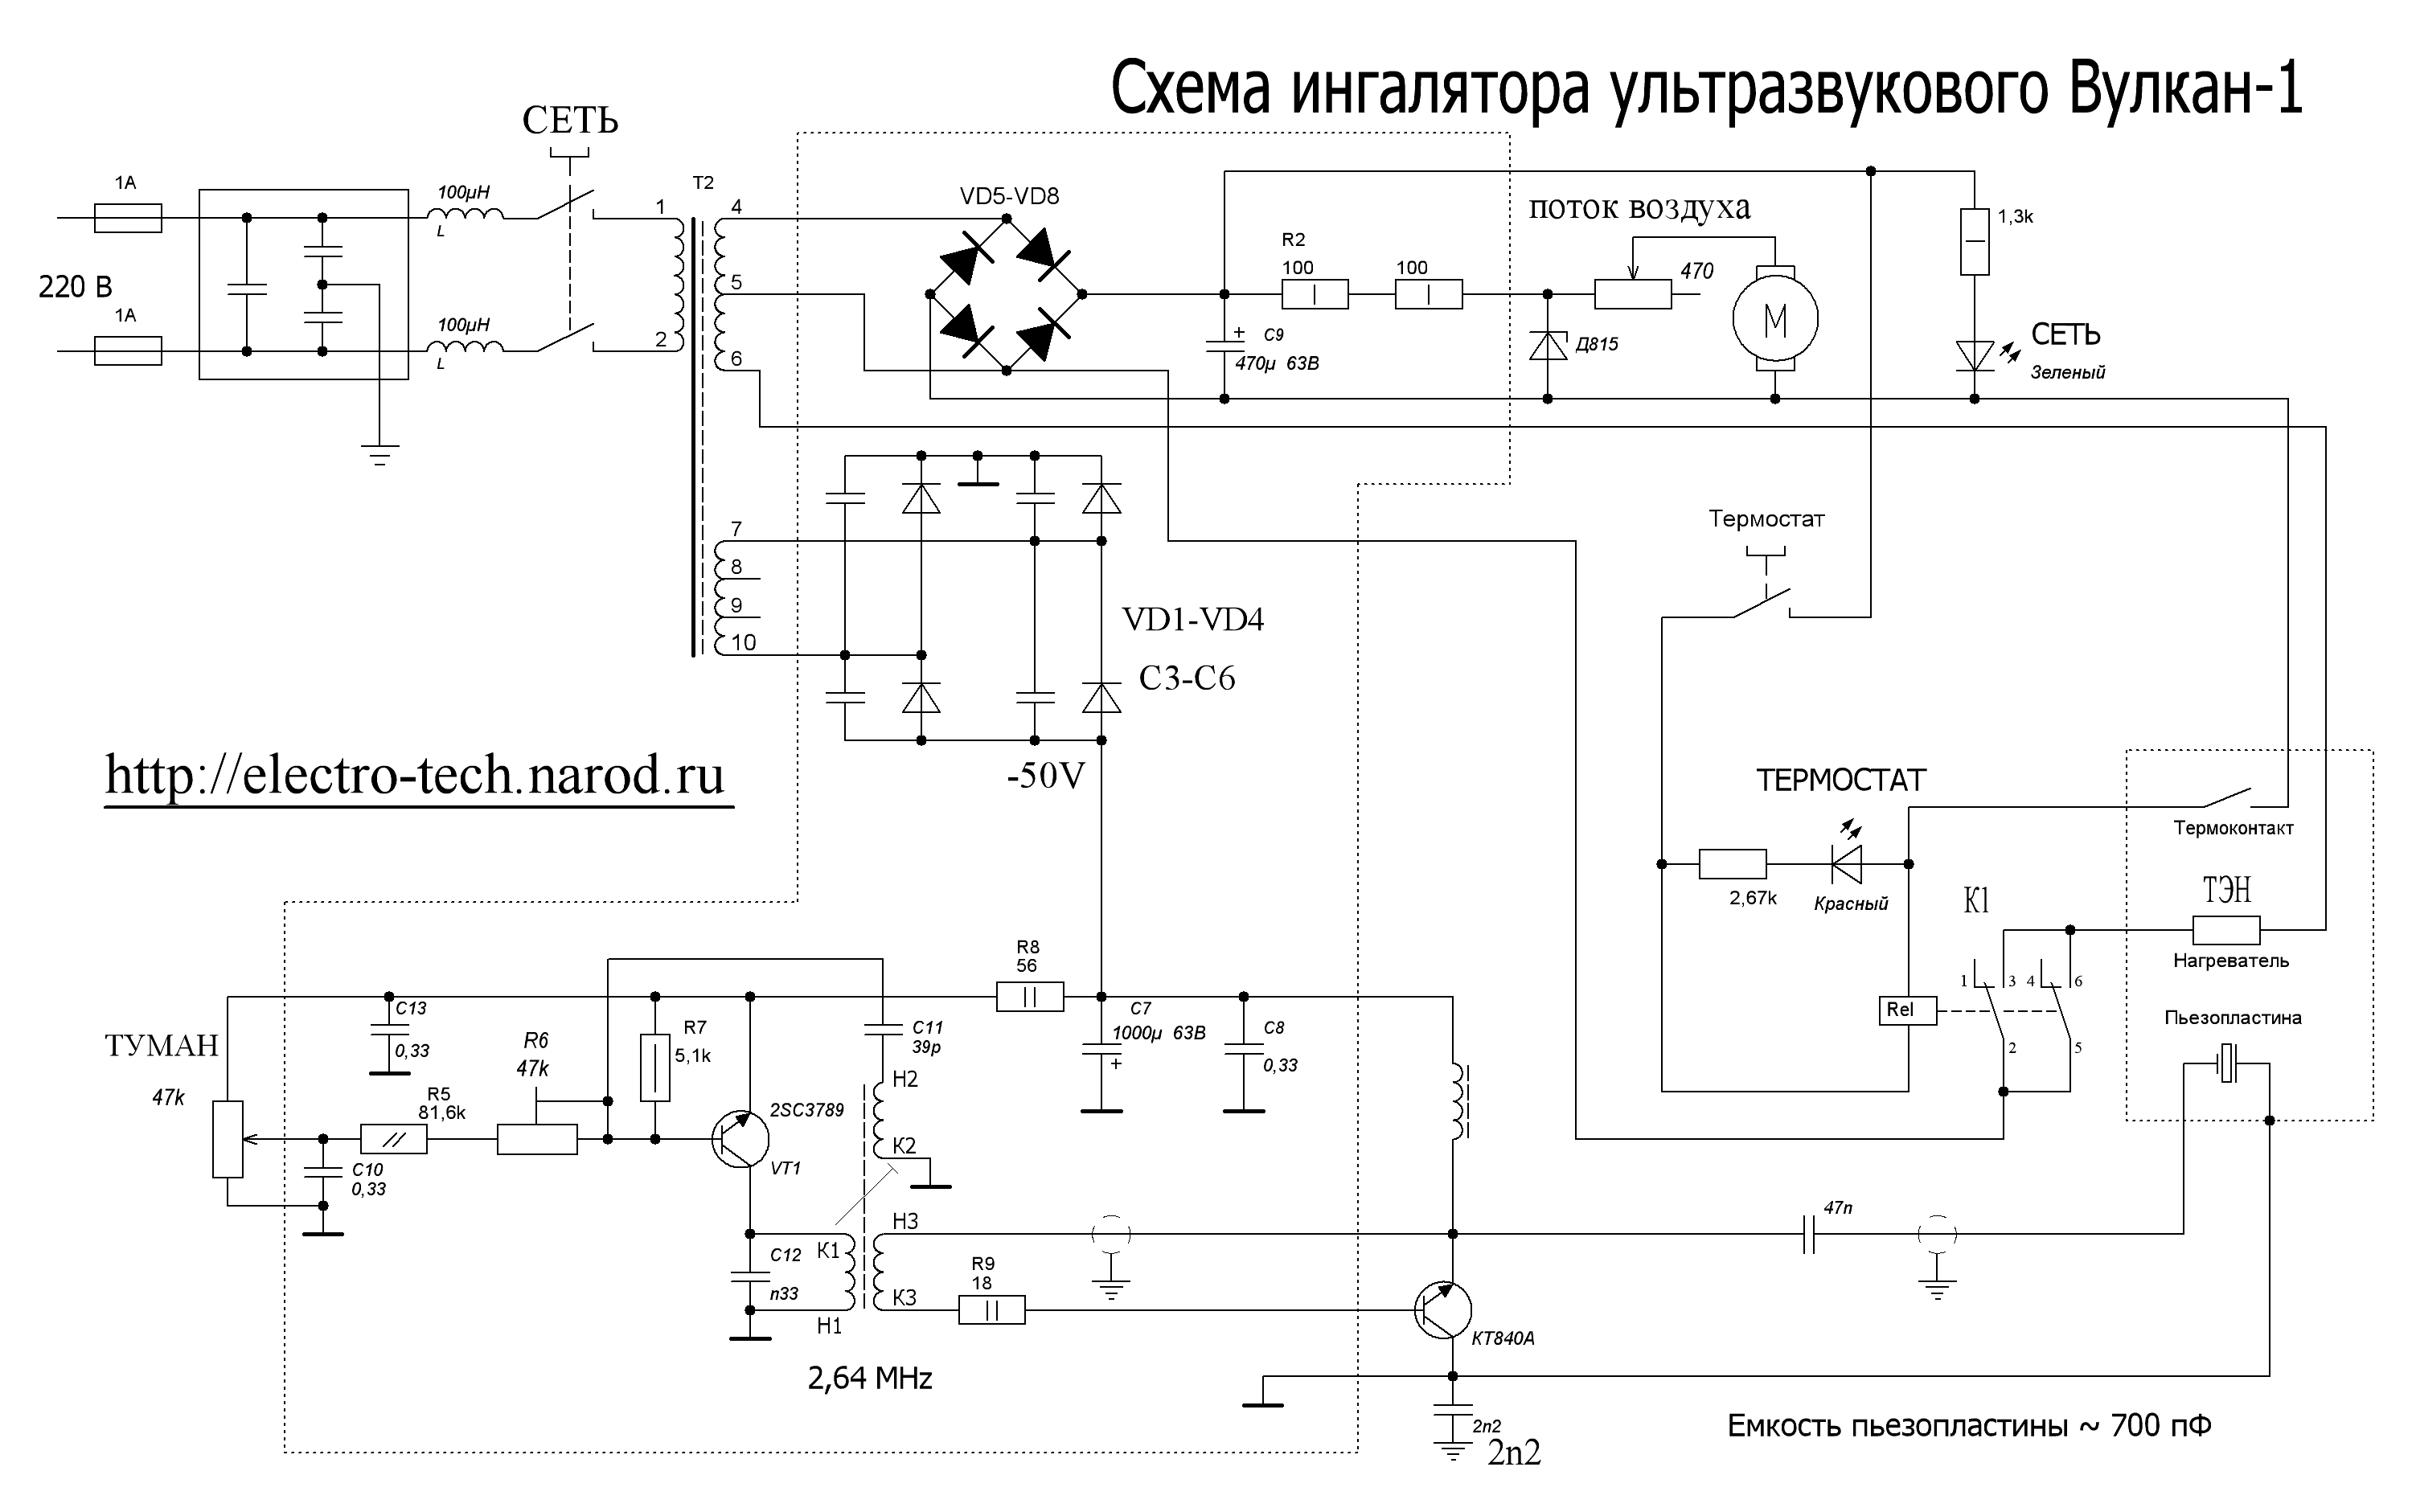 Инструкция По Эксплуатации Рентгенаппарата